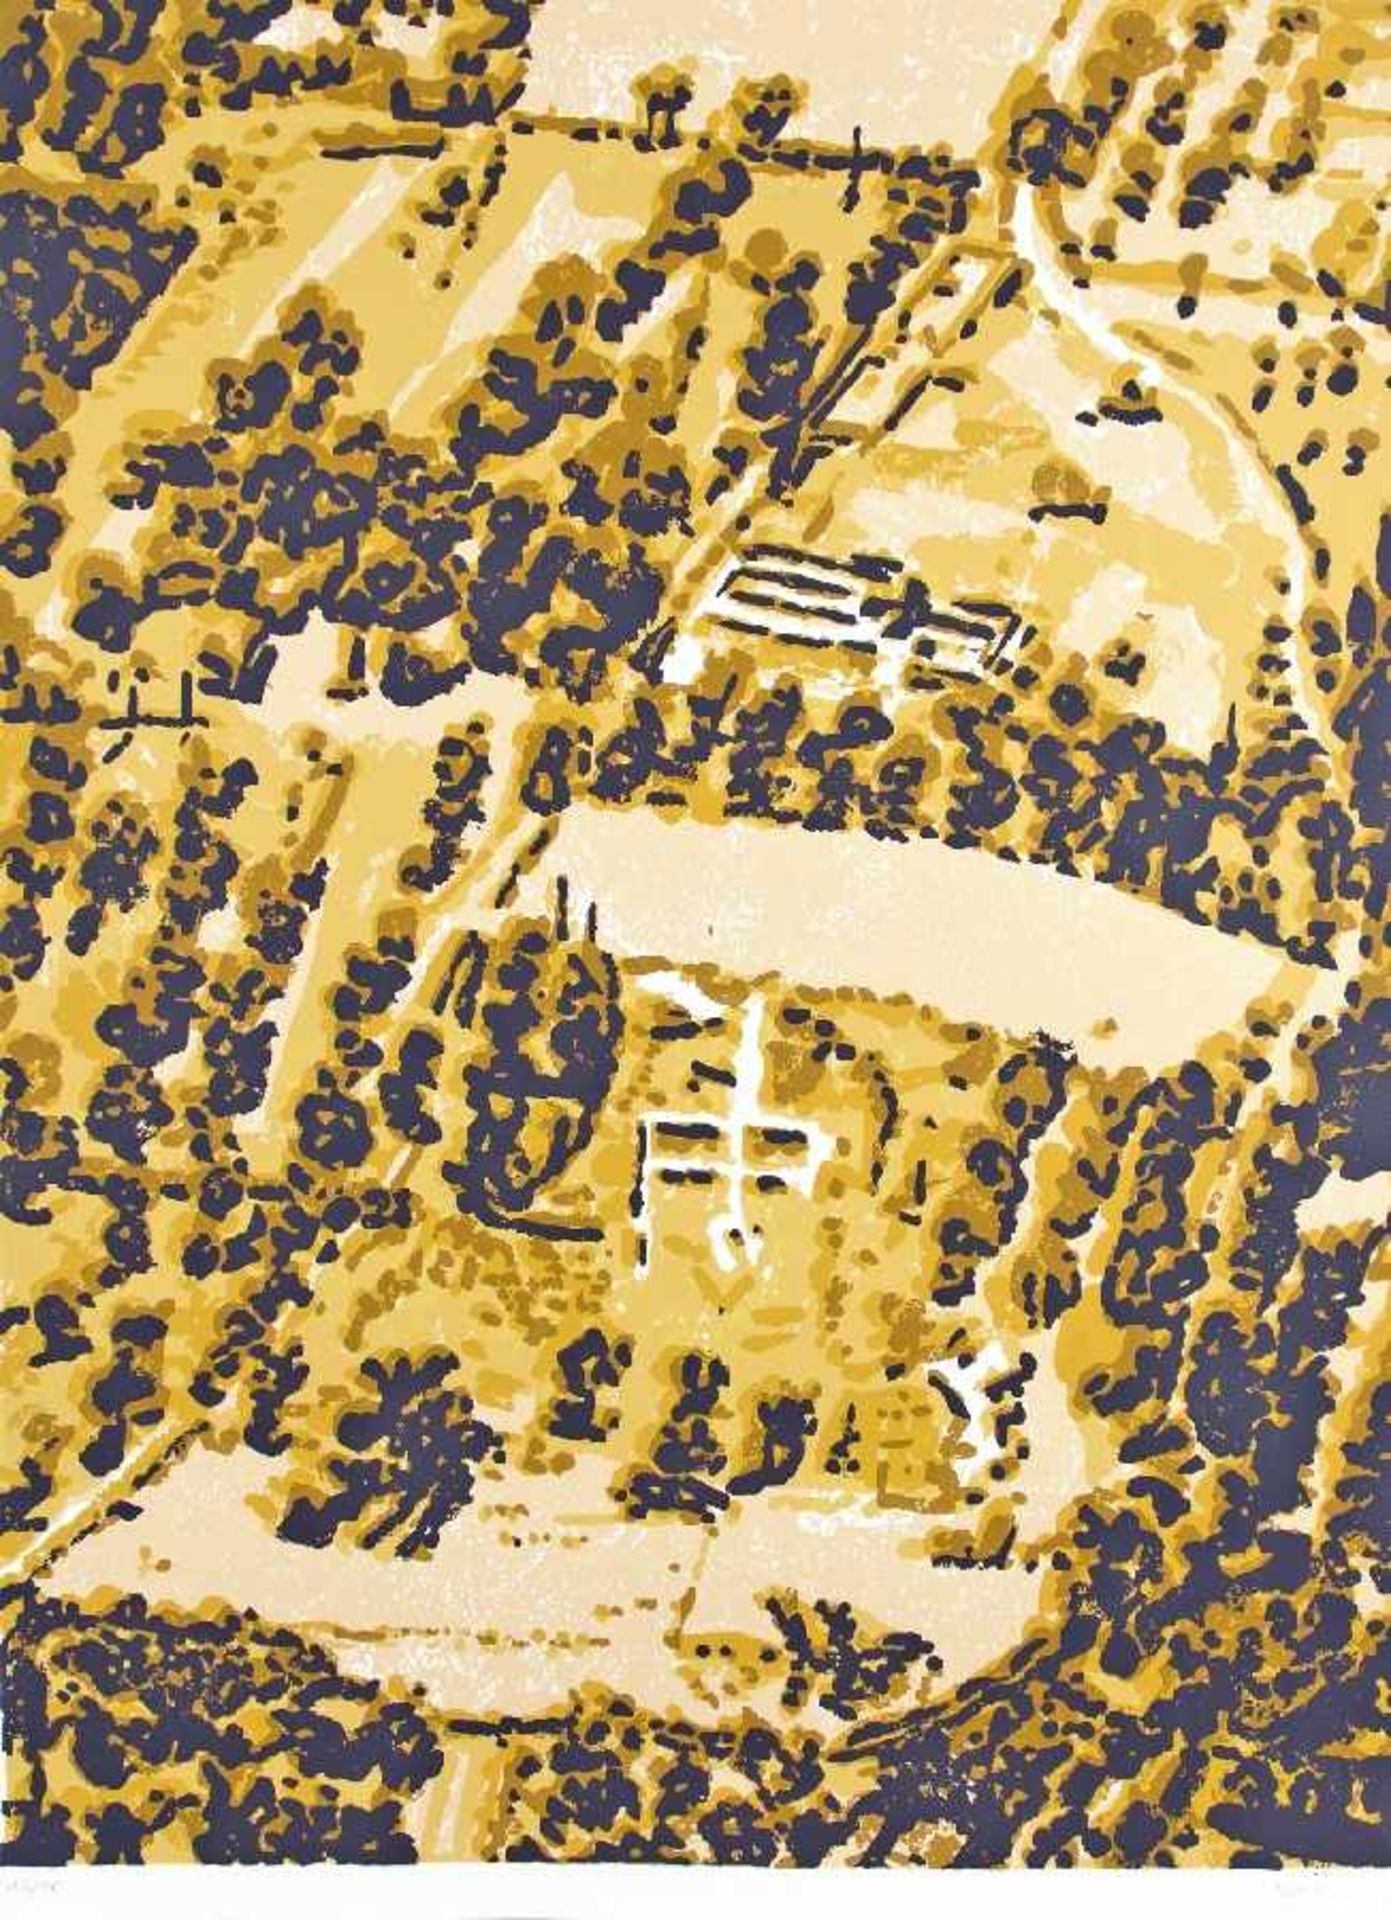 Andreas Gursky u. a. Landschaften (Mappe Kunstring Folkwang Essen) 6 Offsetlithografien auf Papier - Bild 6 aus 7